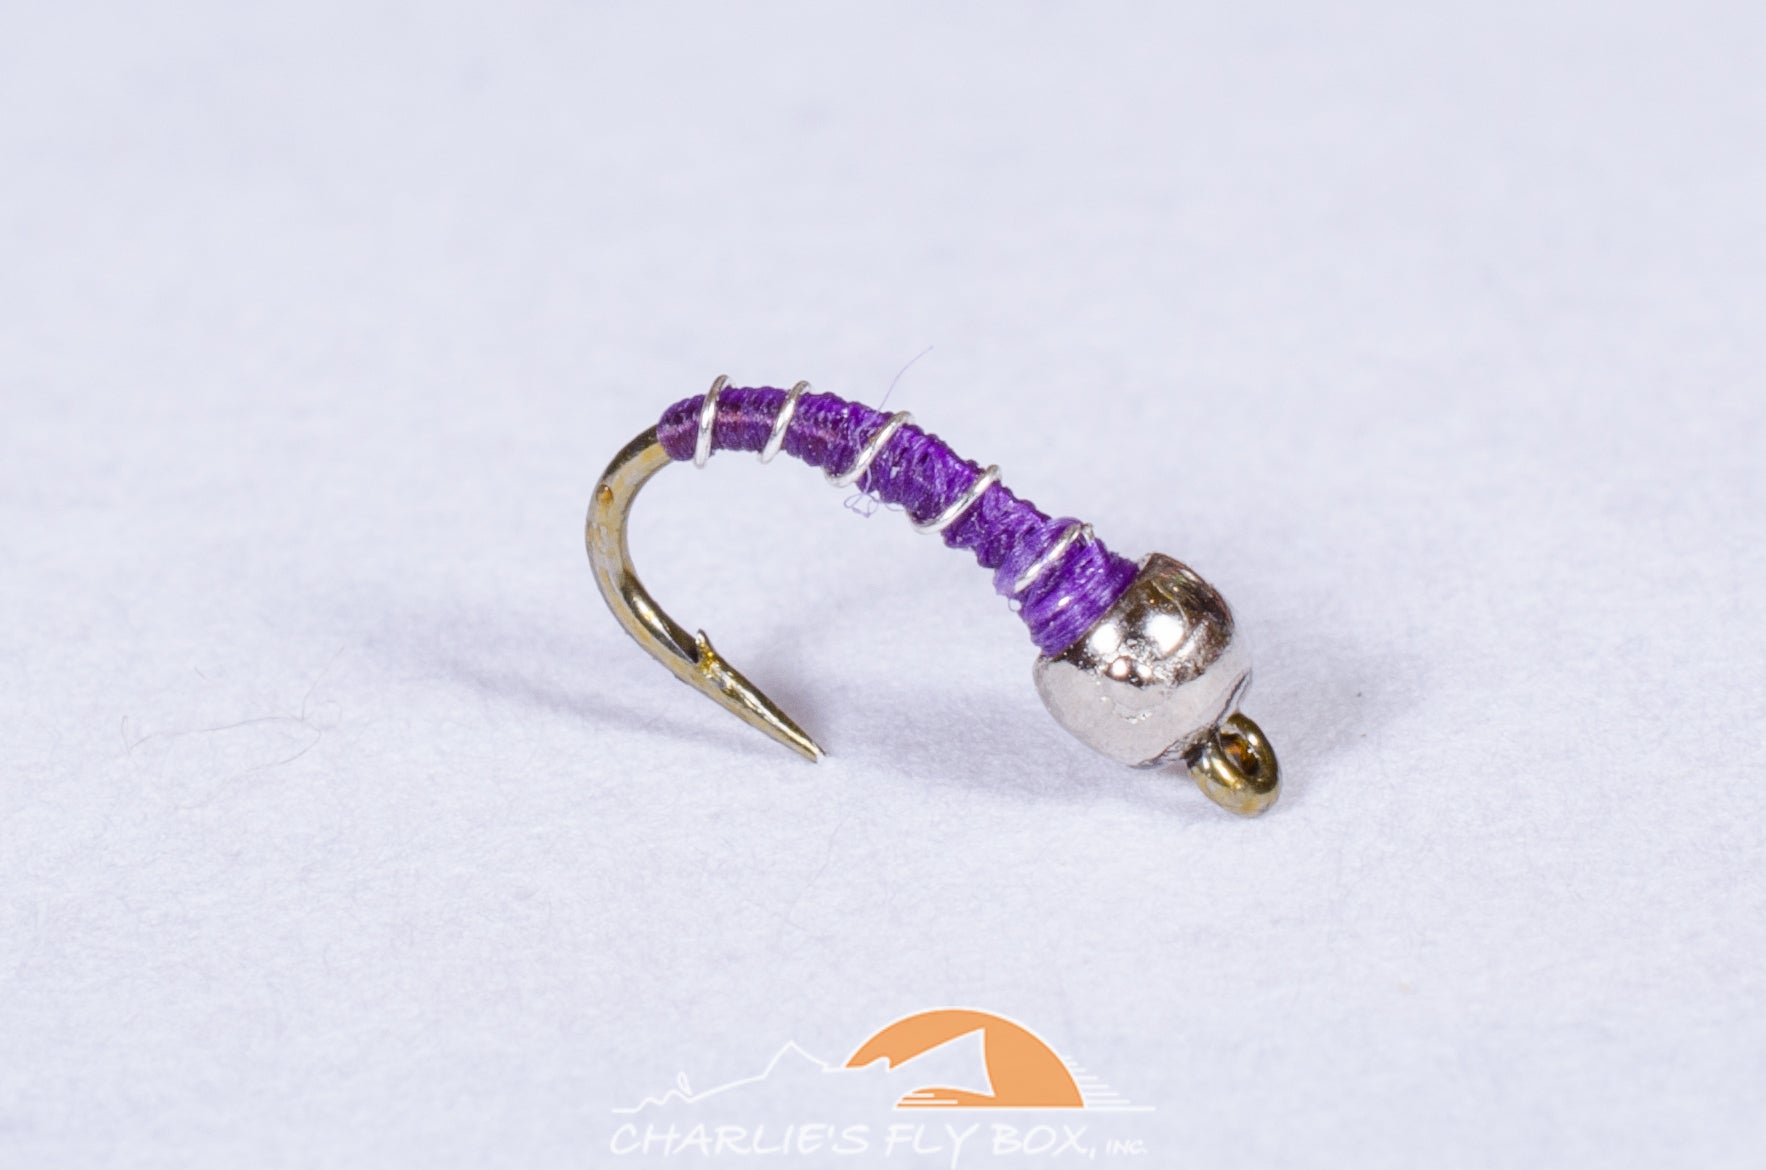 Zebra Midge Tungsten, Purple – charliesflybox